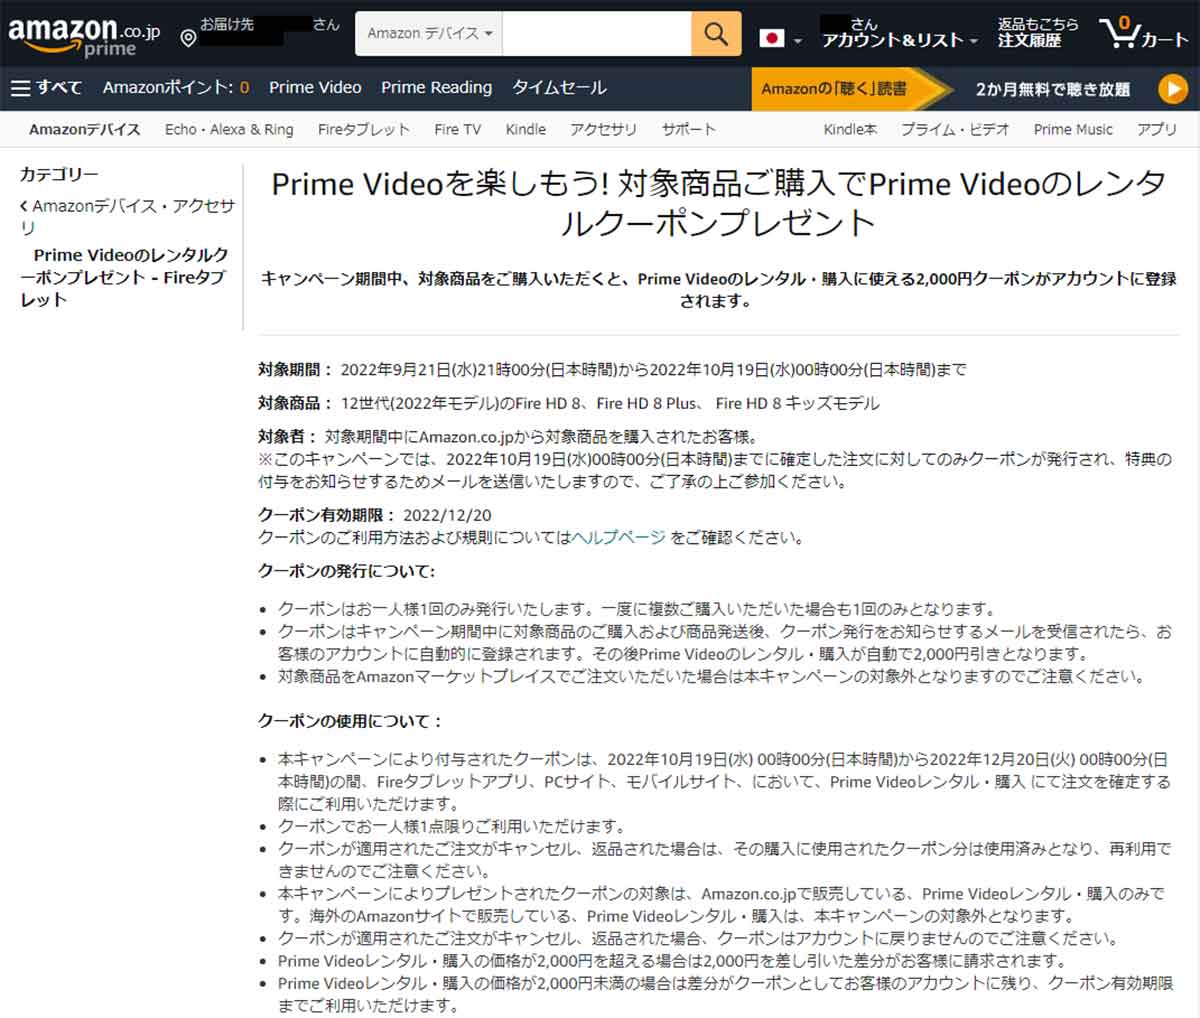 Amazonプライム・ビデオの有料コンテンツ購入に使える2,000円分のクーポンがもらえる